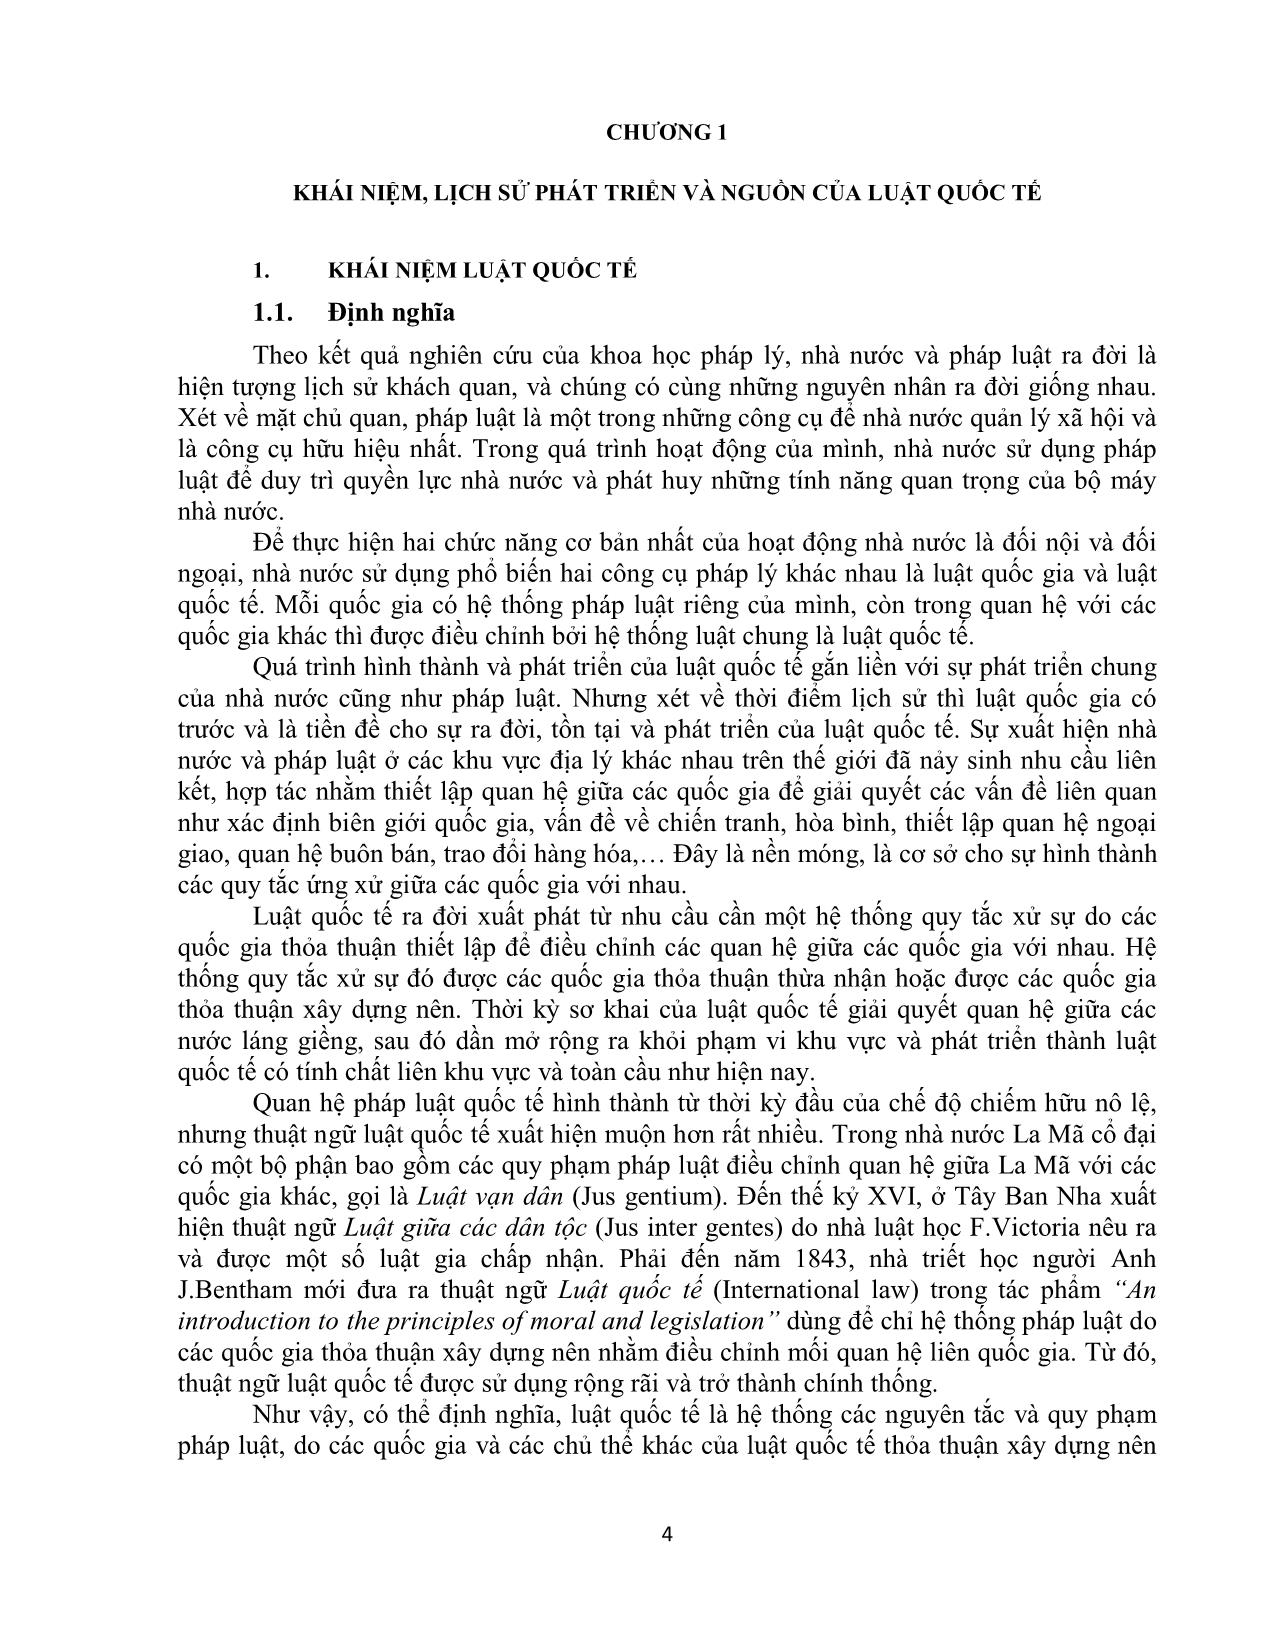 Giáo trình Công pháp quốc tế (Phần 1) trang 4